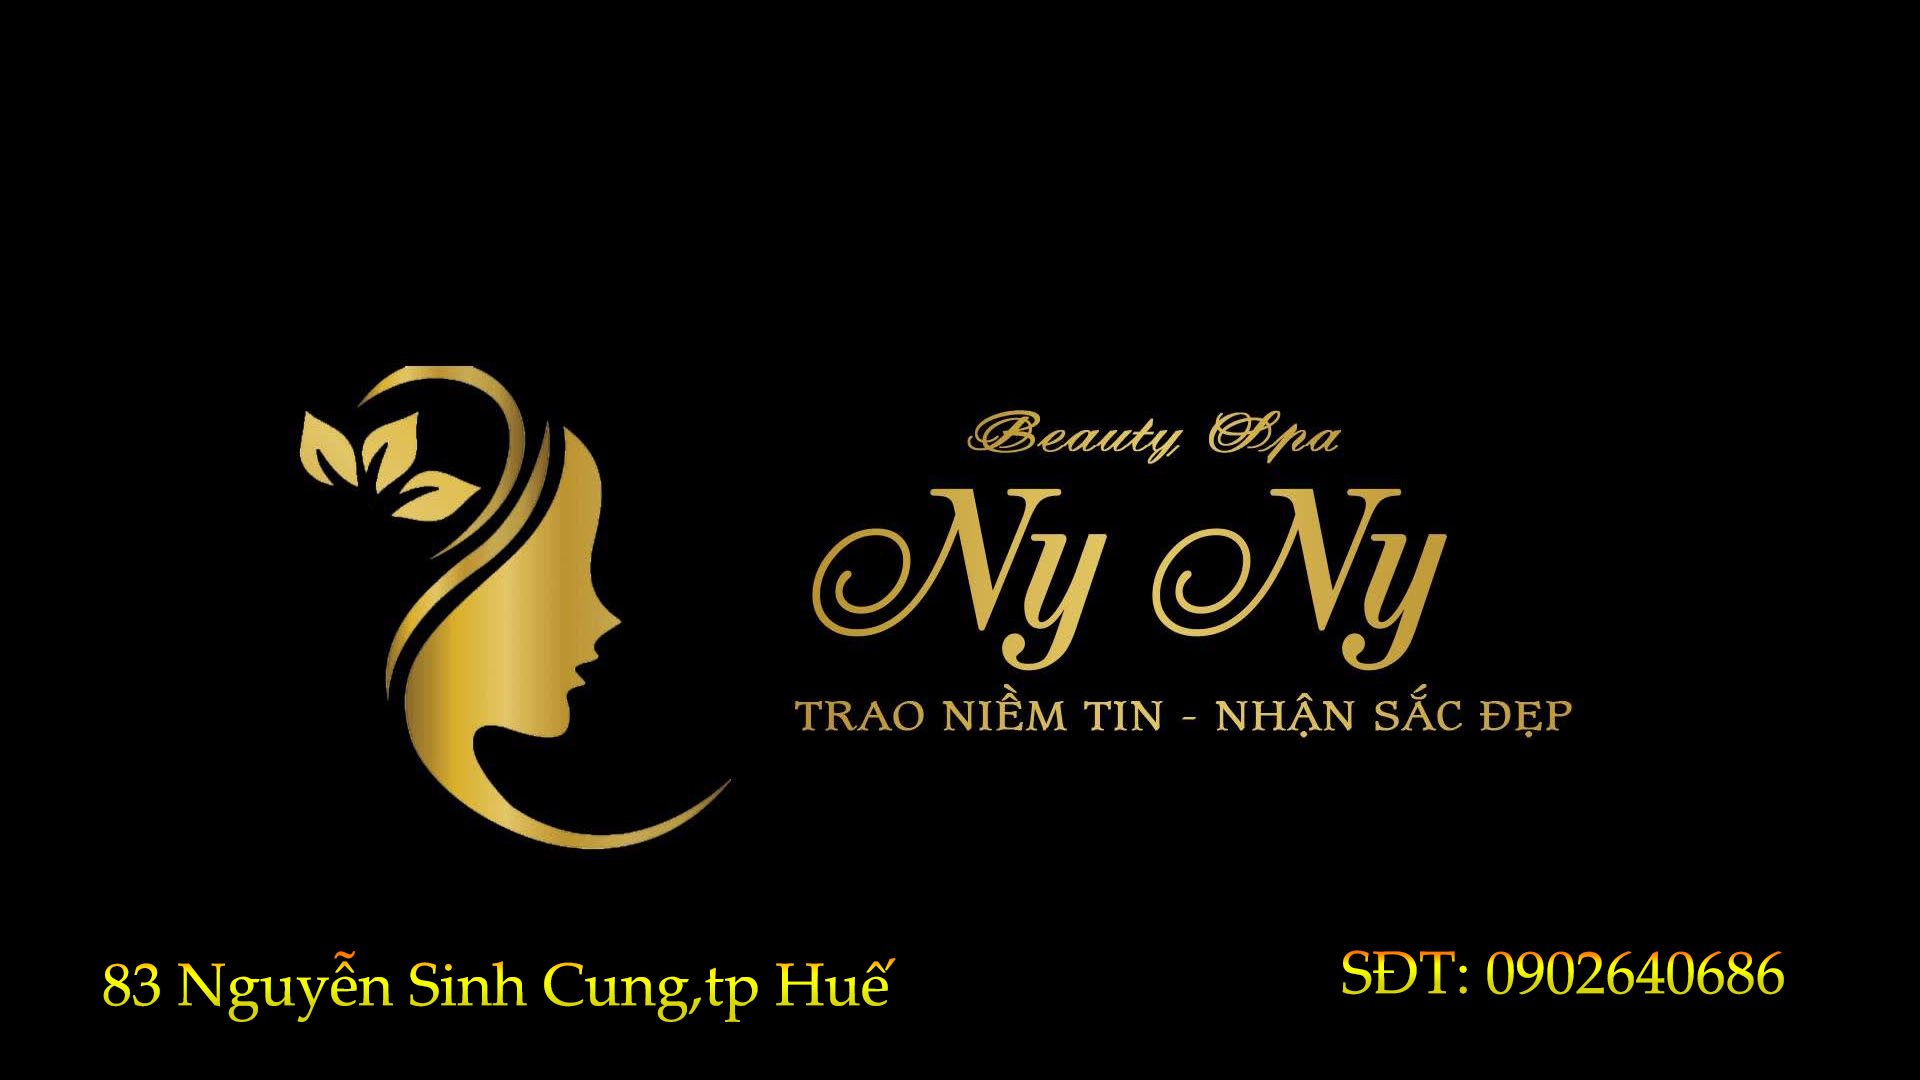 NyNy Beauty Spa